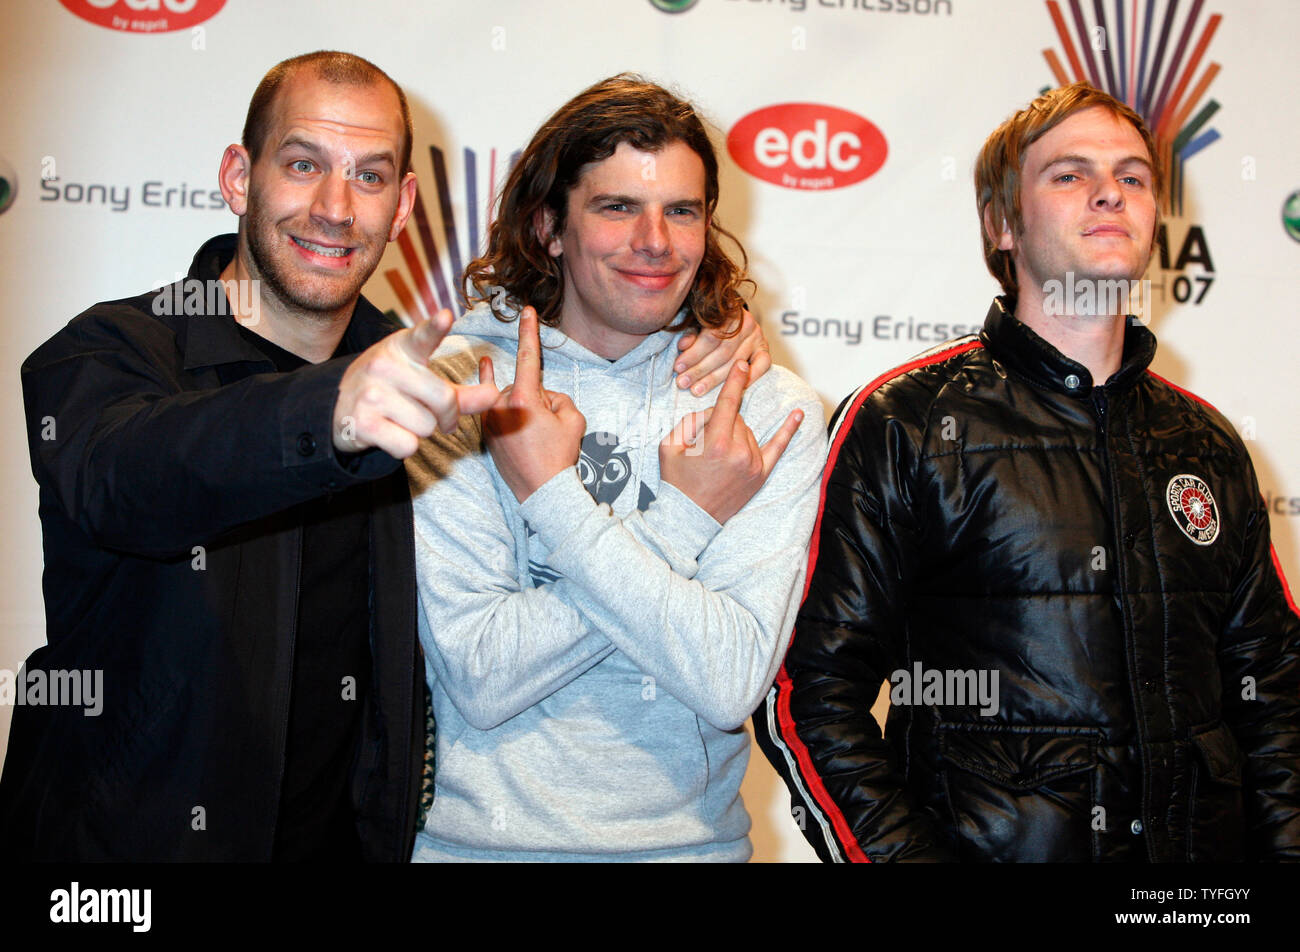 Florian Weber (L), Andi Erhard (C) et Peter Brugger du groupe de rock allemand Sportfreunde Stiller arrivent à les MTV Europe Music Awards à Munich, Allemagne le 1 novembre 2007. (Photo d'UPI/David Silpa) Banque D'Images